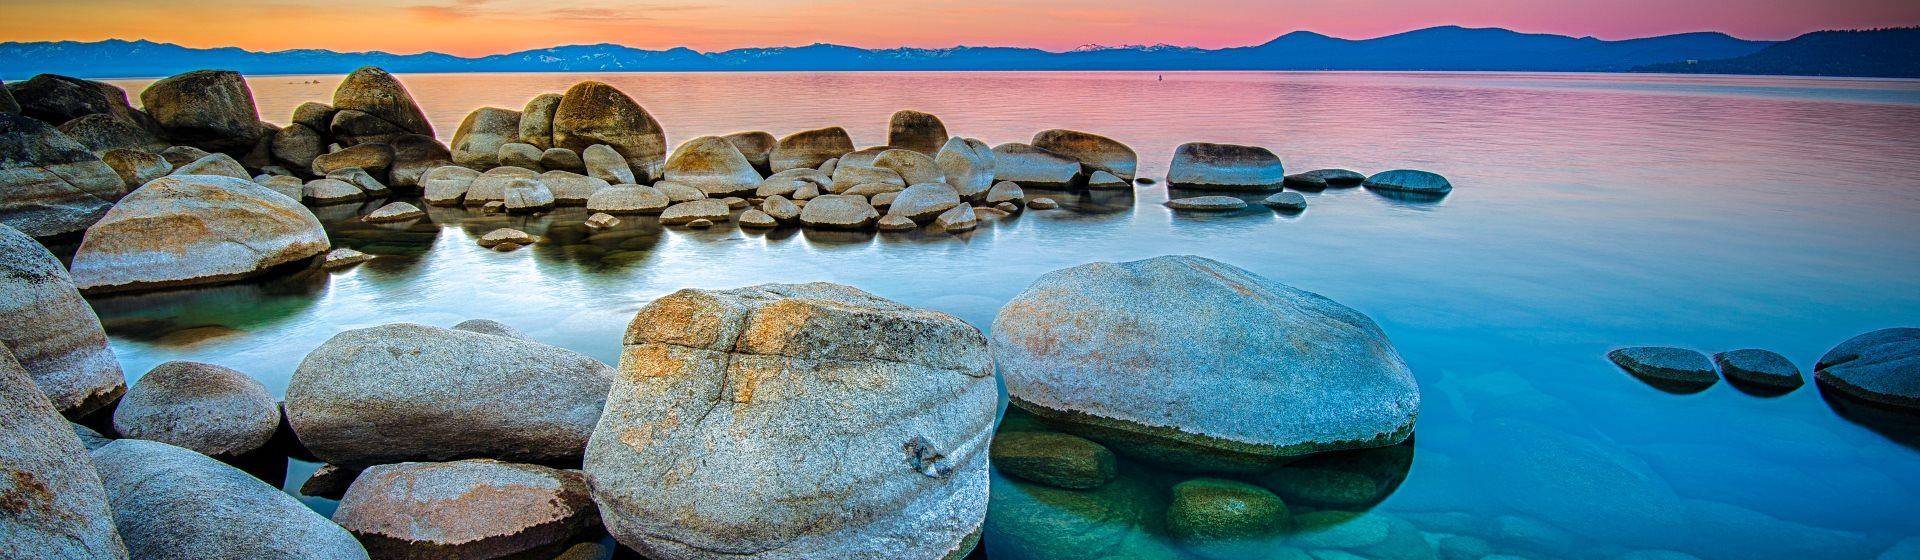 Holidays to Lake Tahoe Image